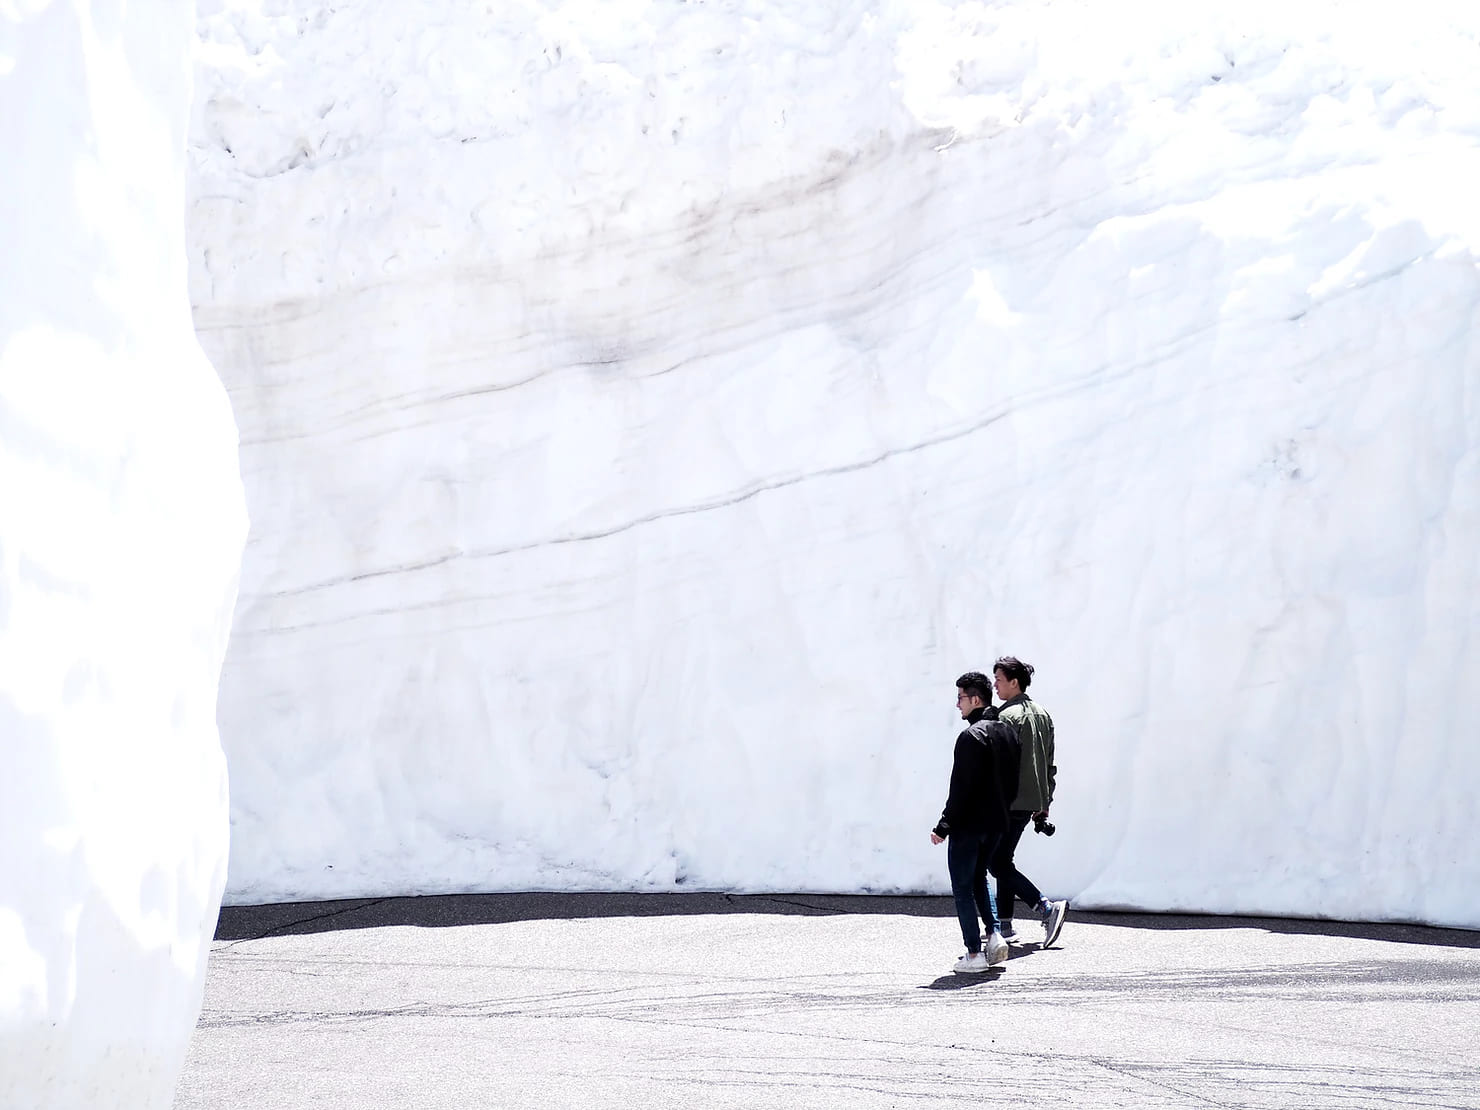 Cung đường chạy quanh núi, tuyết trắng xóa chất cao 17 mét ở Nhật Bản - 8